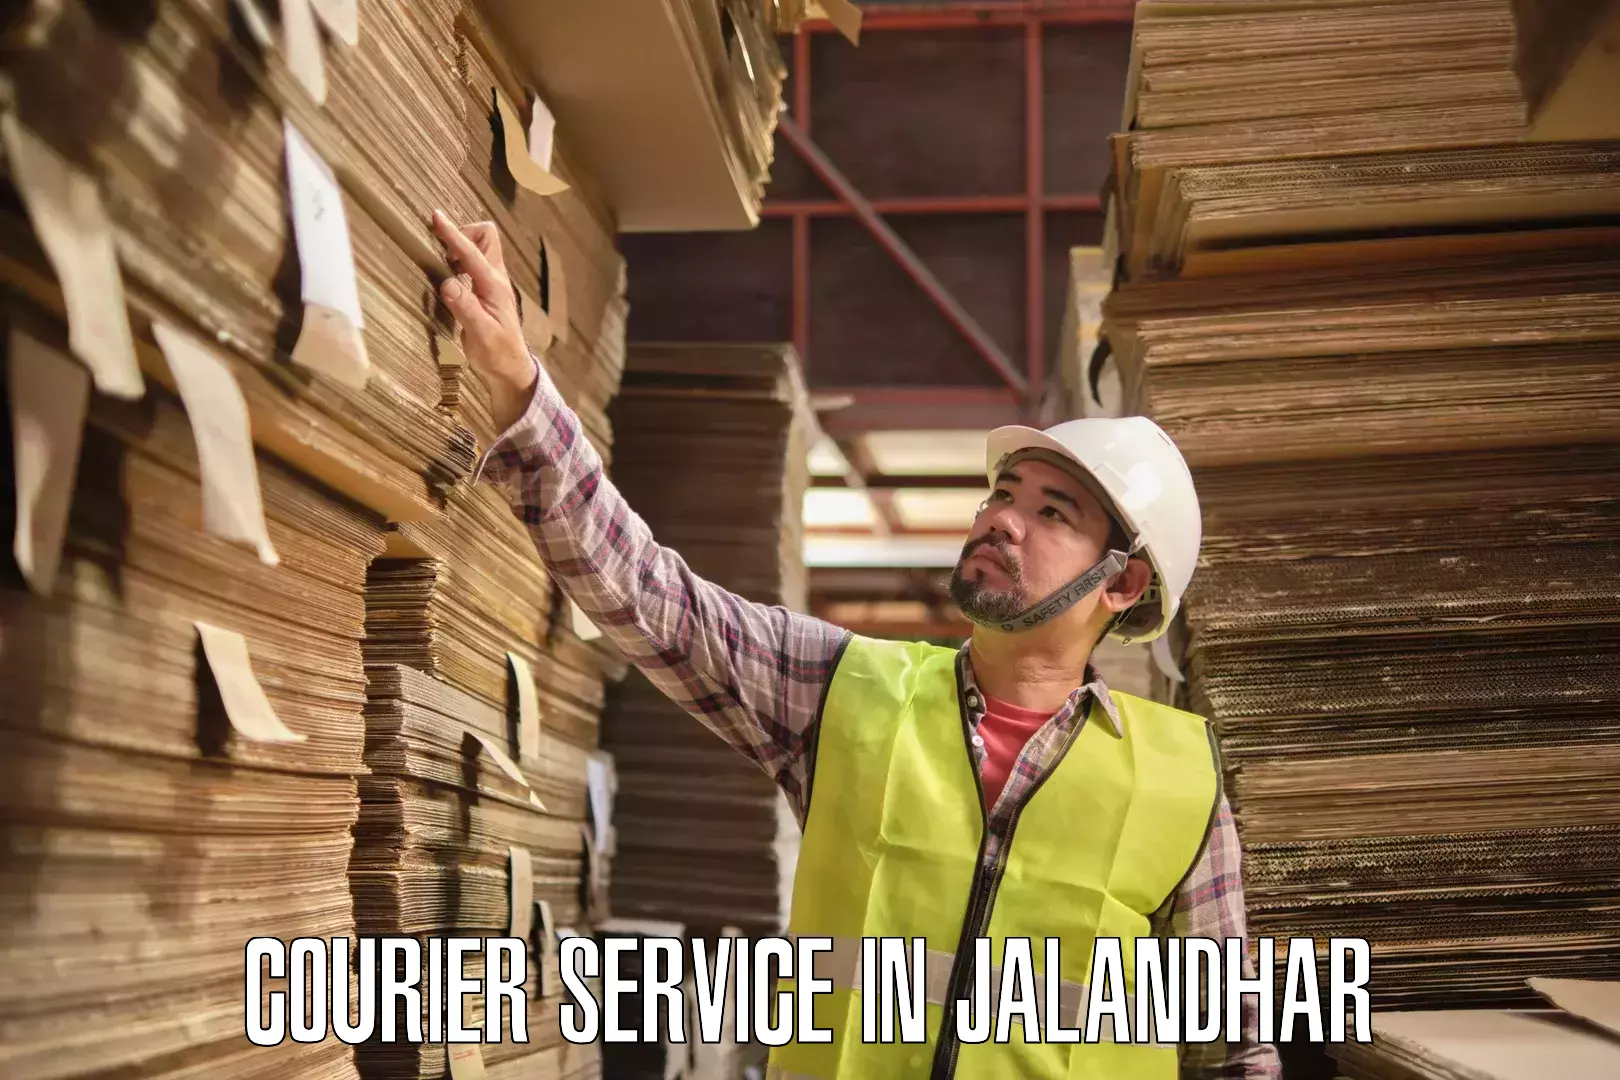 Professional courier handling in Jalandhar